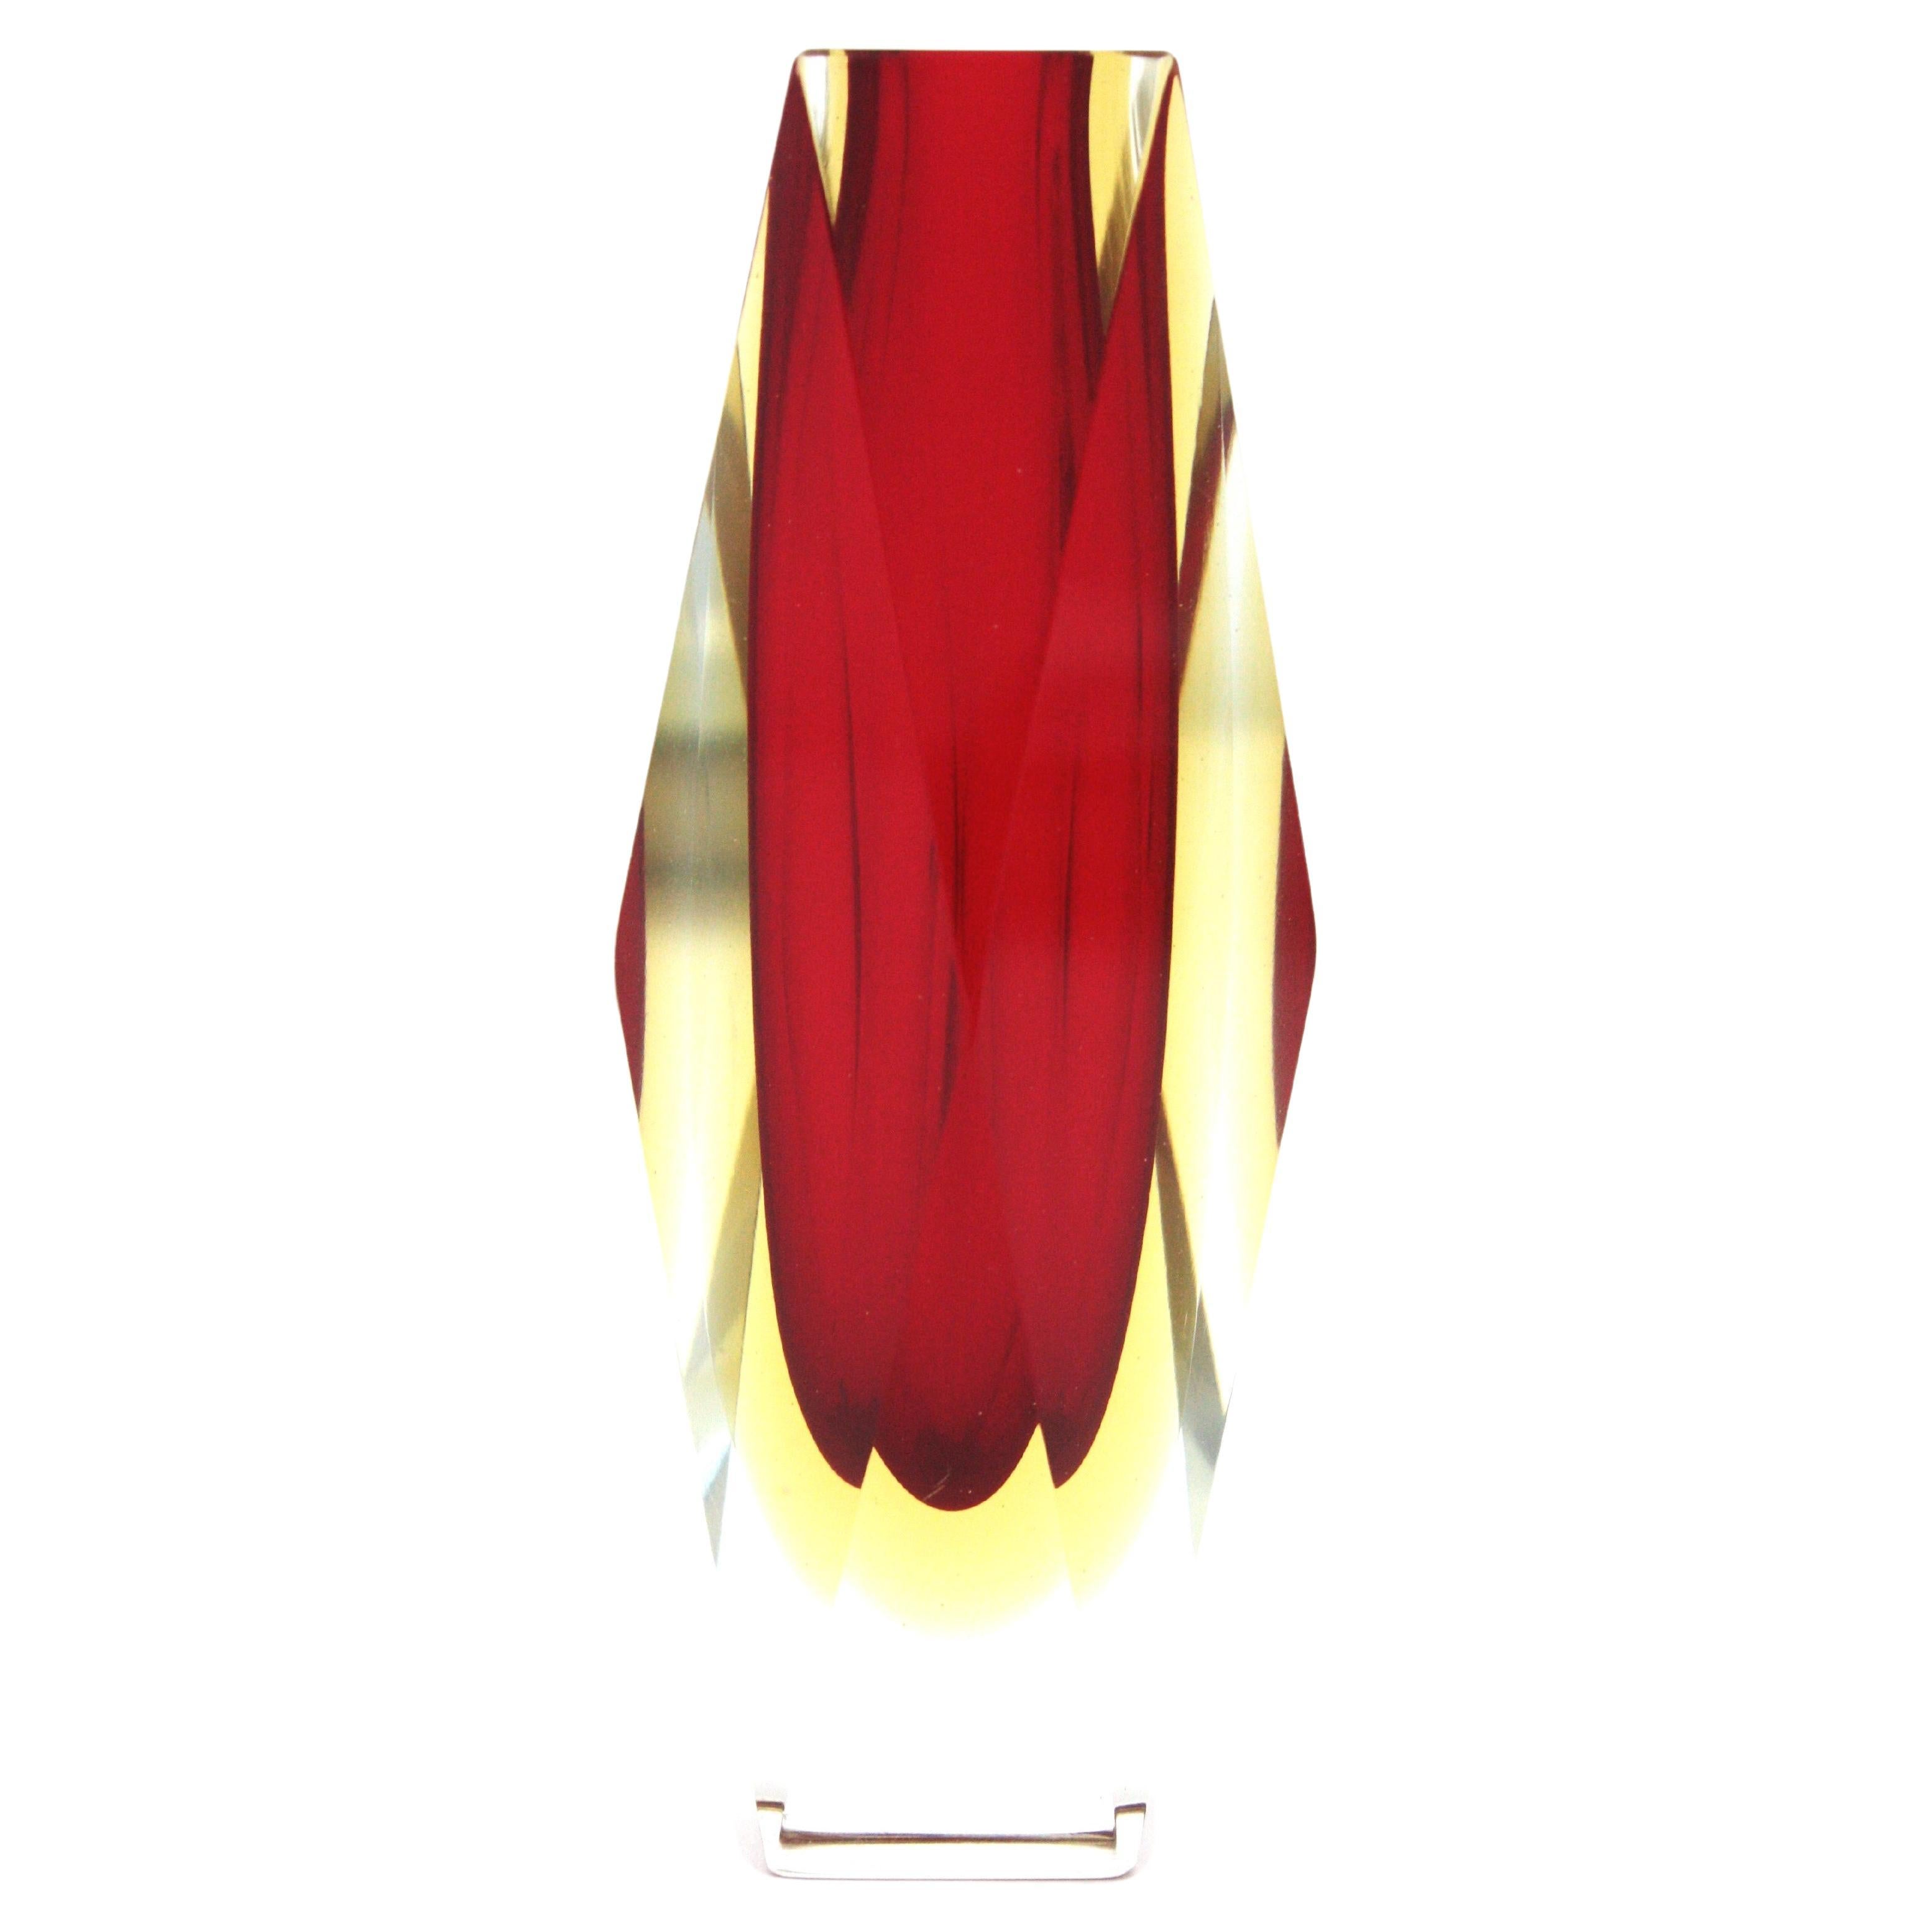 Facettierte Sommerso-Vase aus rotem und gelbem Murano-Kunstglas mit Doppelmantel. Zuschreibung an Mandruzzato, Italien, 1960er Jahre
Rotes Glas mit einer Schicht aus gelbem Glas, das in Klarglas eingeschlossen ist. Die leuchtend rote Farbe ist ein